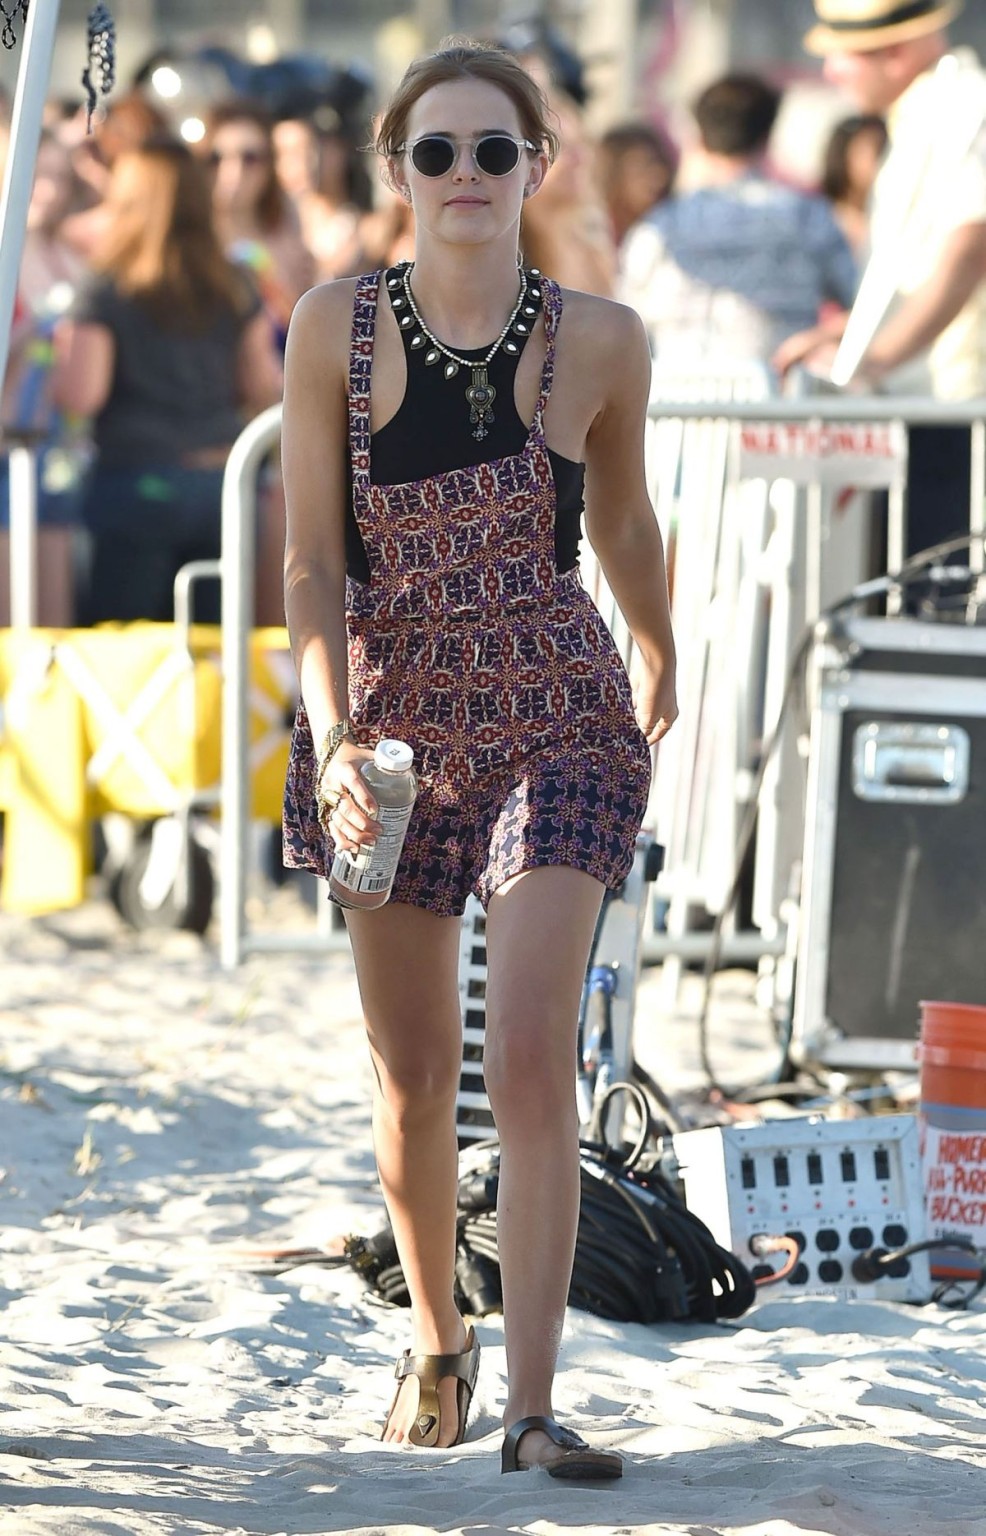 Zoey deutch se ve caliente en un top escaso y mini vestido en la playa durante el set
 #75165632